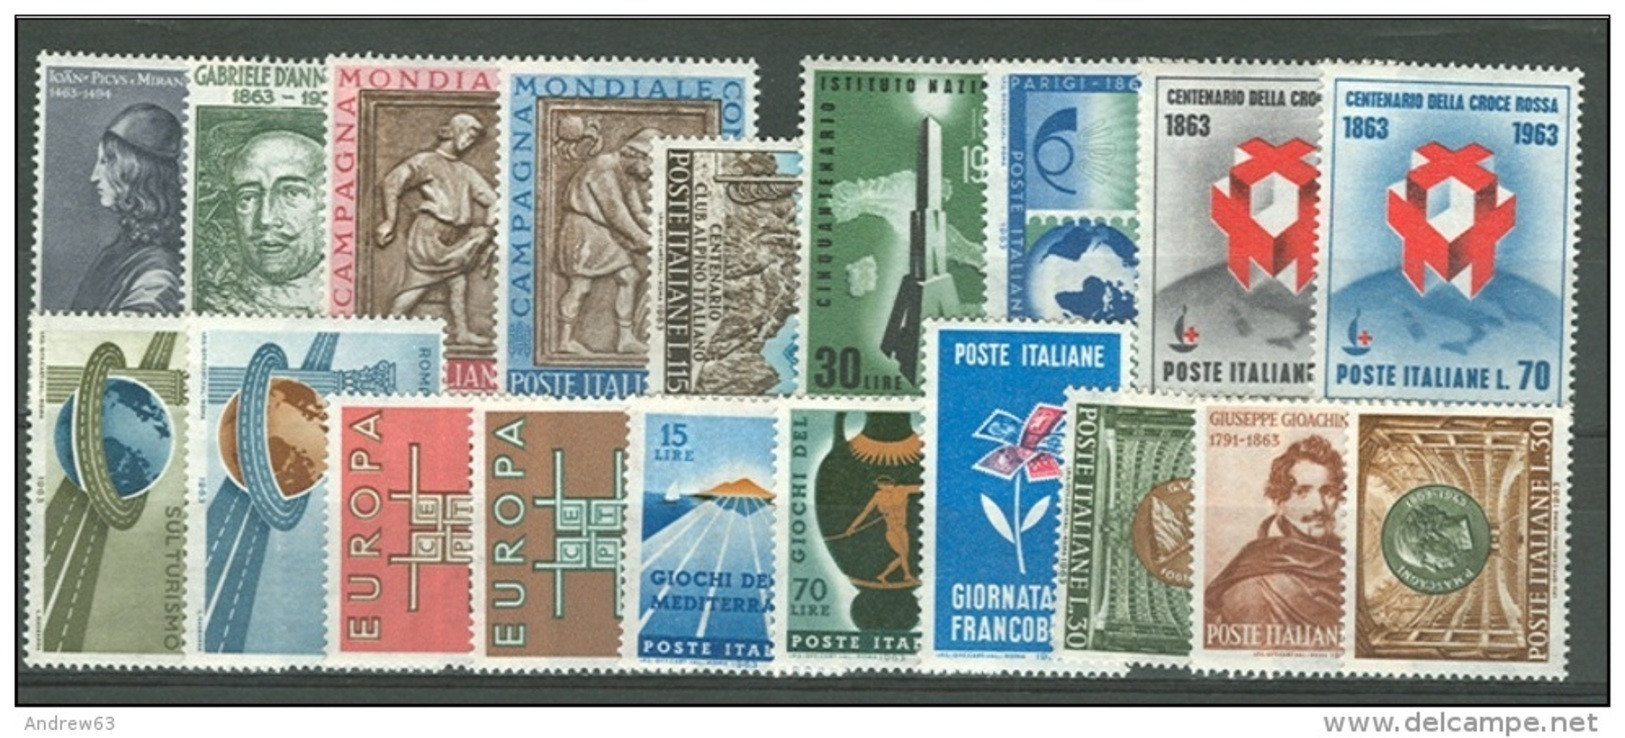 ITALIA REPUBBLICA - 1963 - Annata Completa - 19 Valori - Complete Year - ** MNH/VF - Full Years